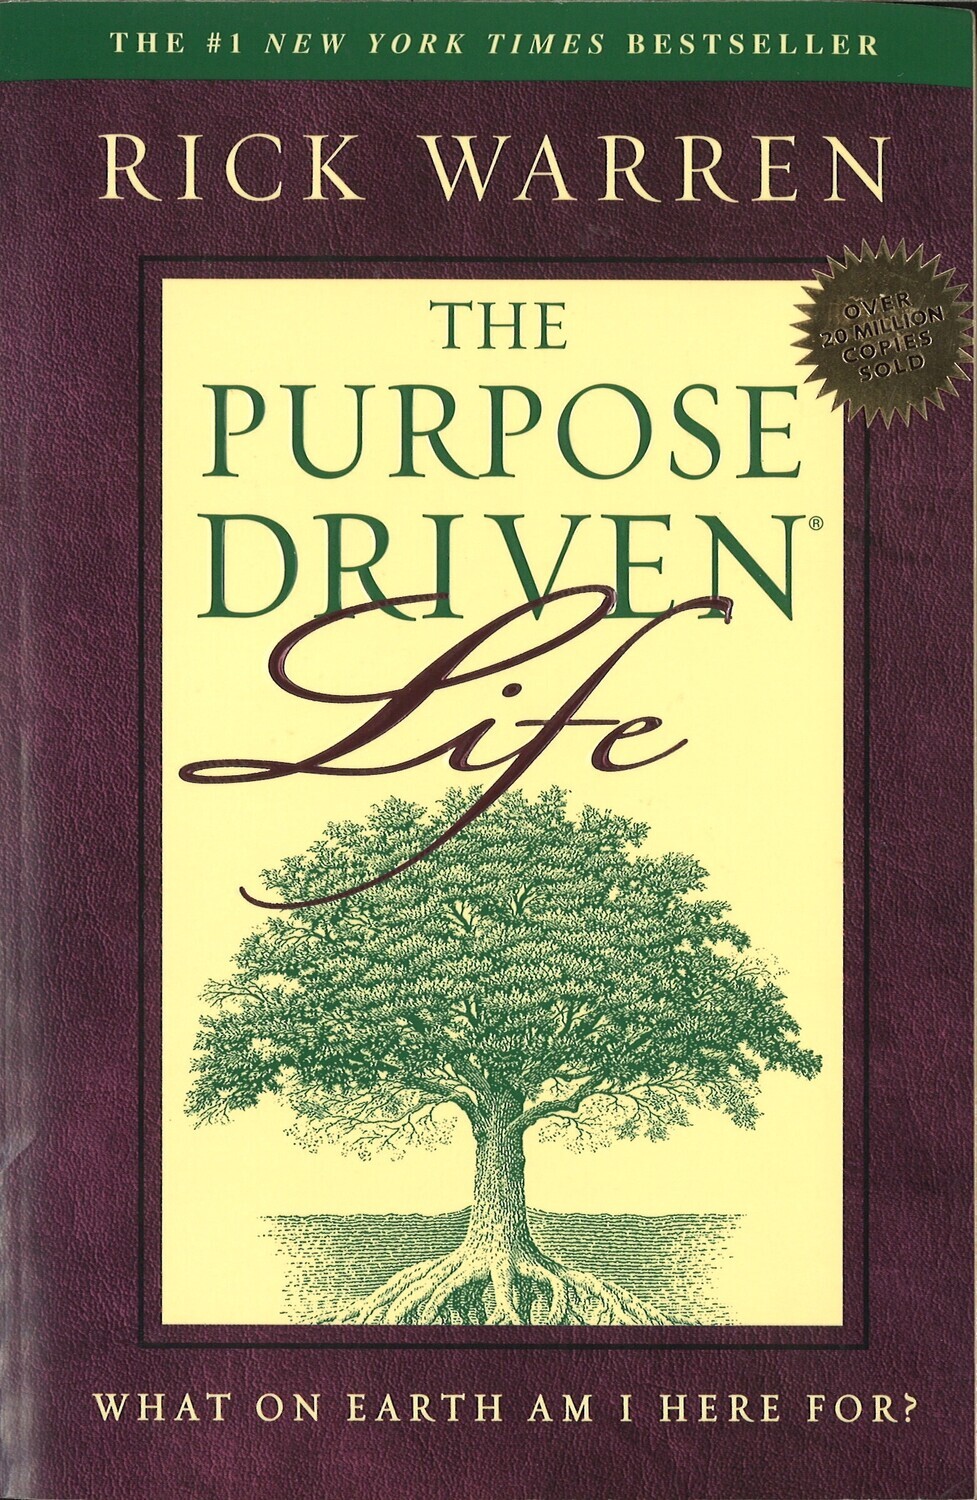 The Purpose Driven Live